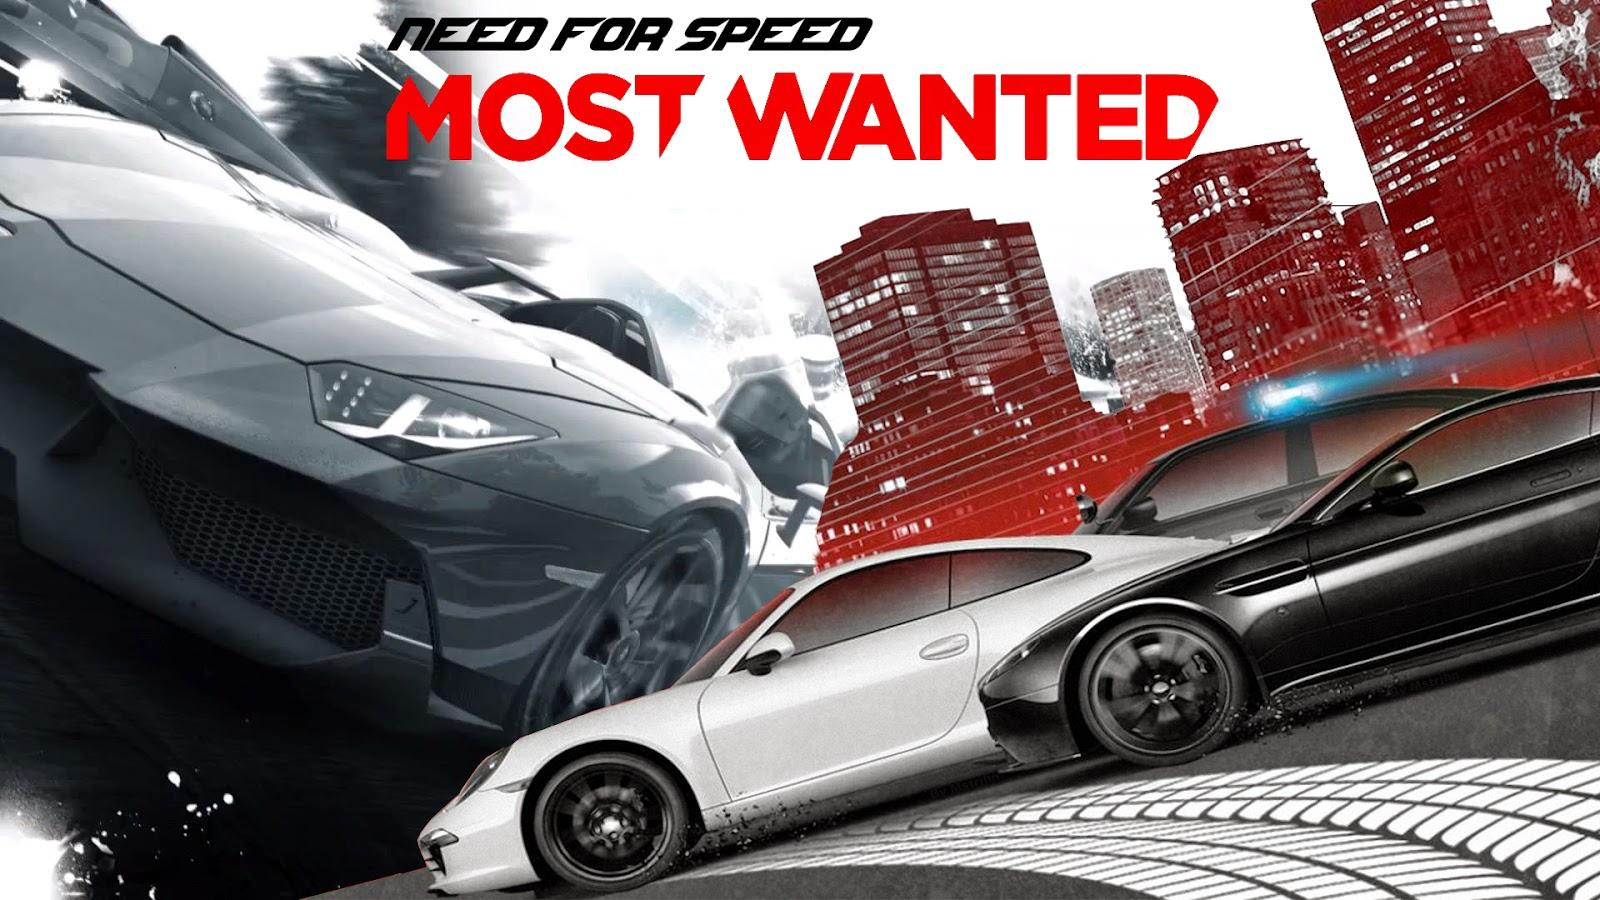 Bermodalkan Akun Origin, Game Need for Speed Bisa di Download Secara Gratis!